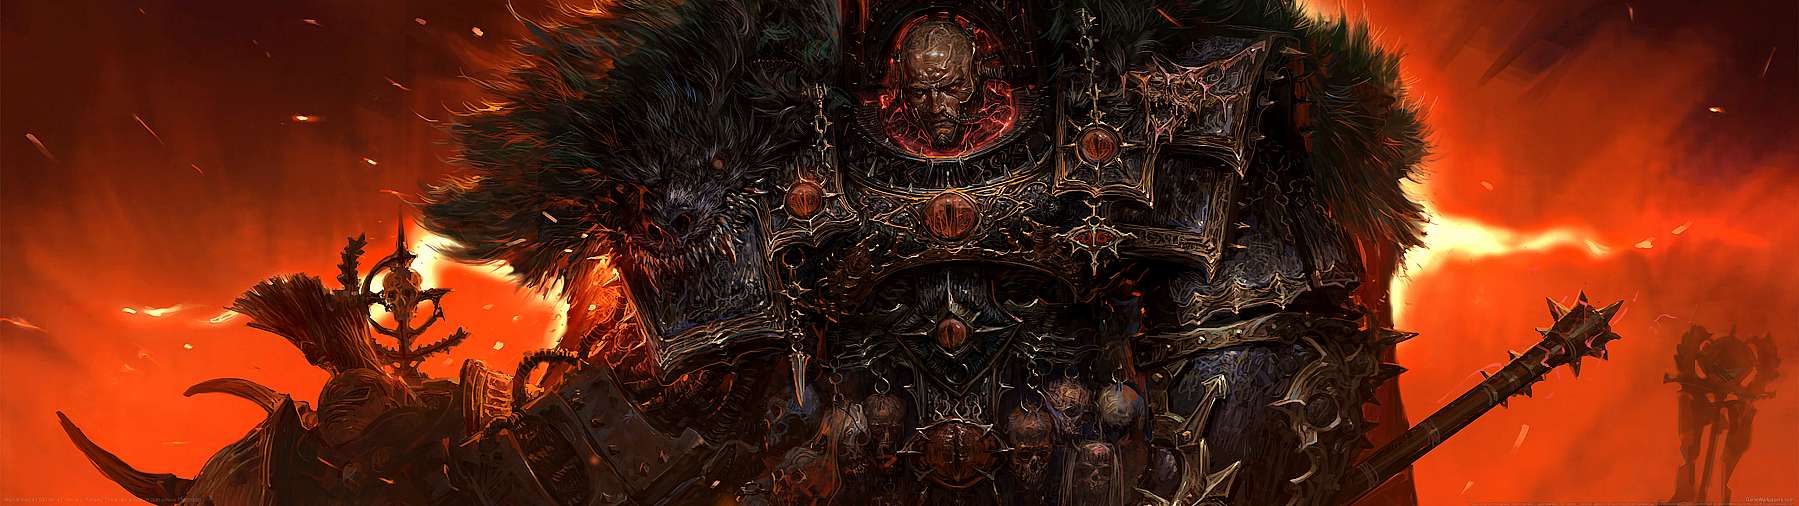 Warhammer 40,000 fan art superwide achtergrond 02